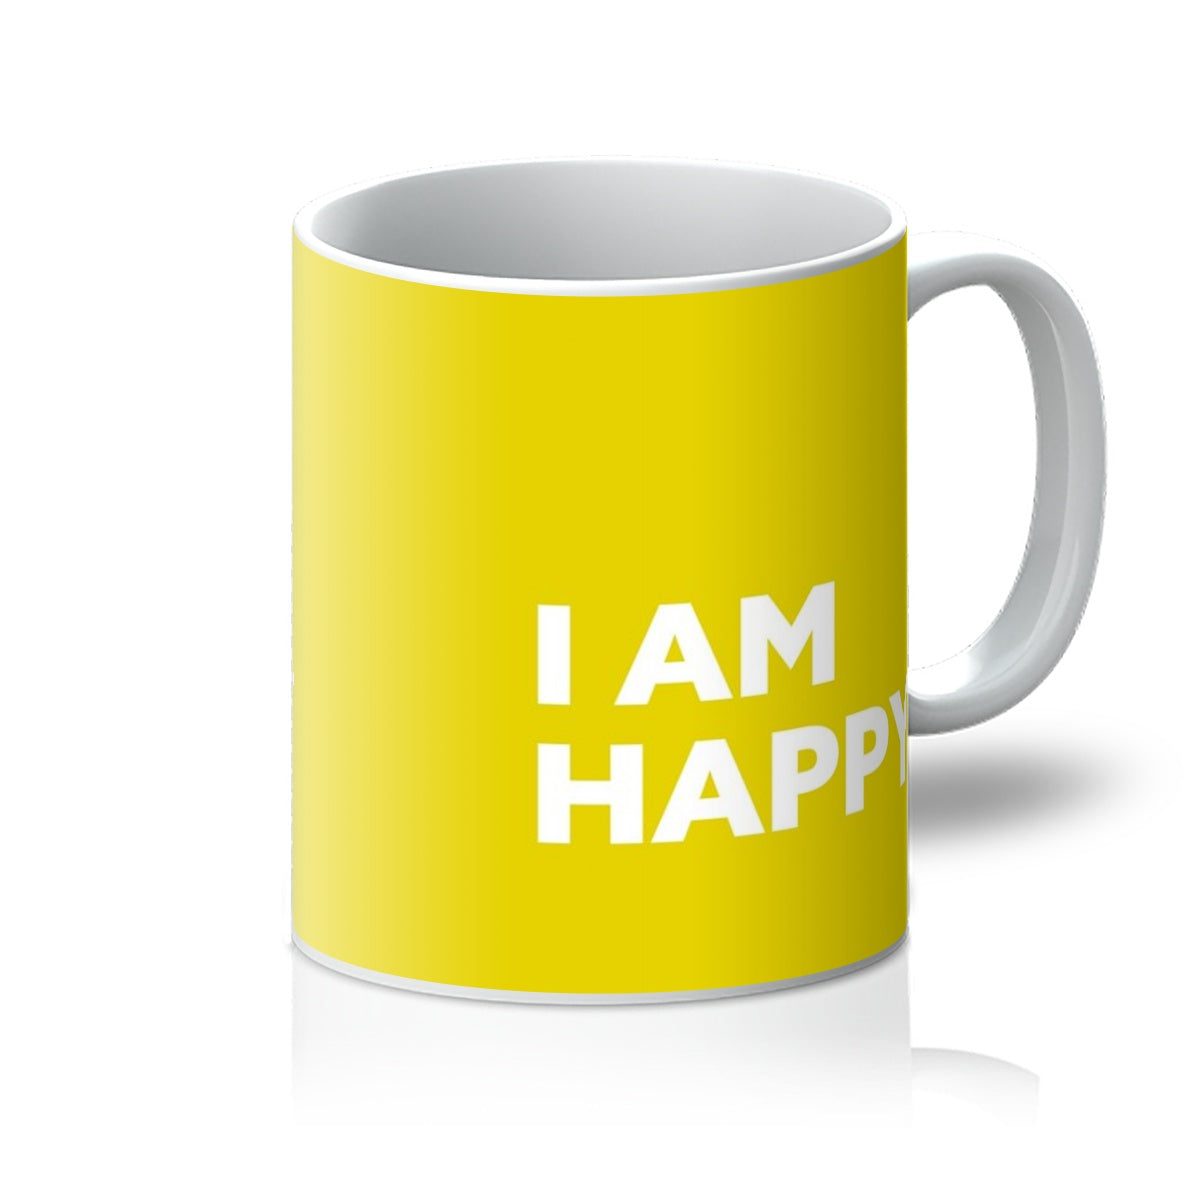 I AM Happy – Sunshine Yellow Mug